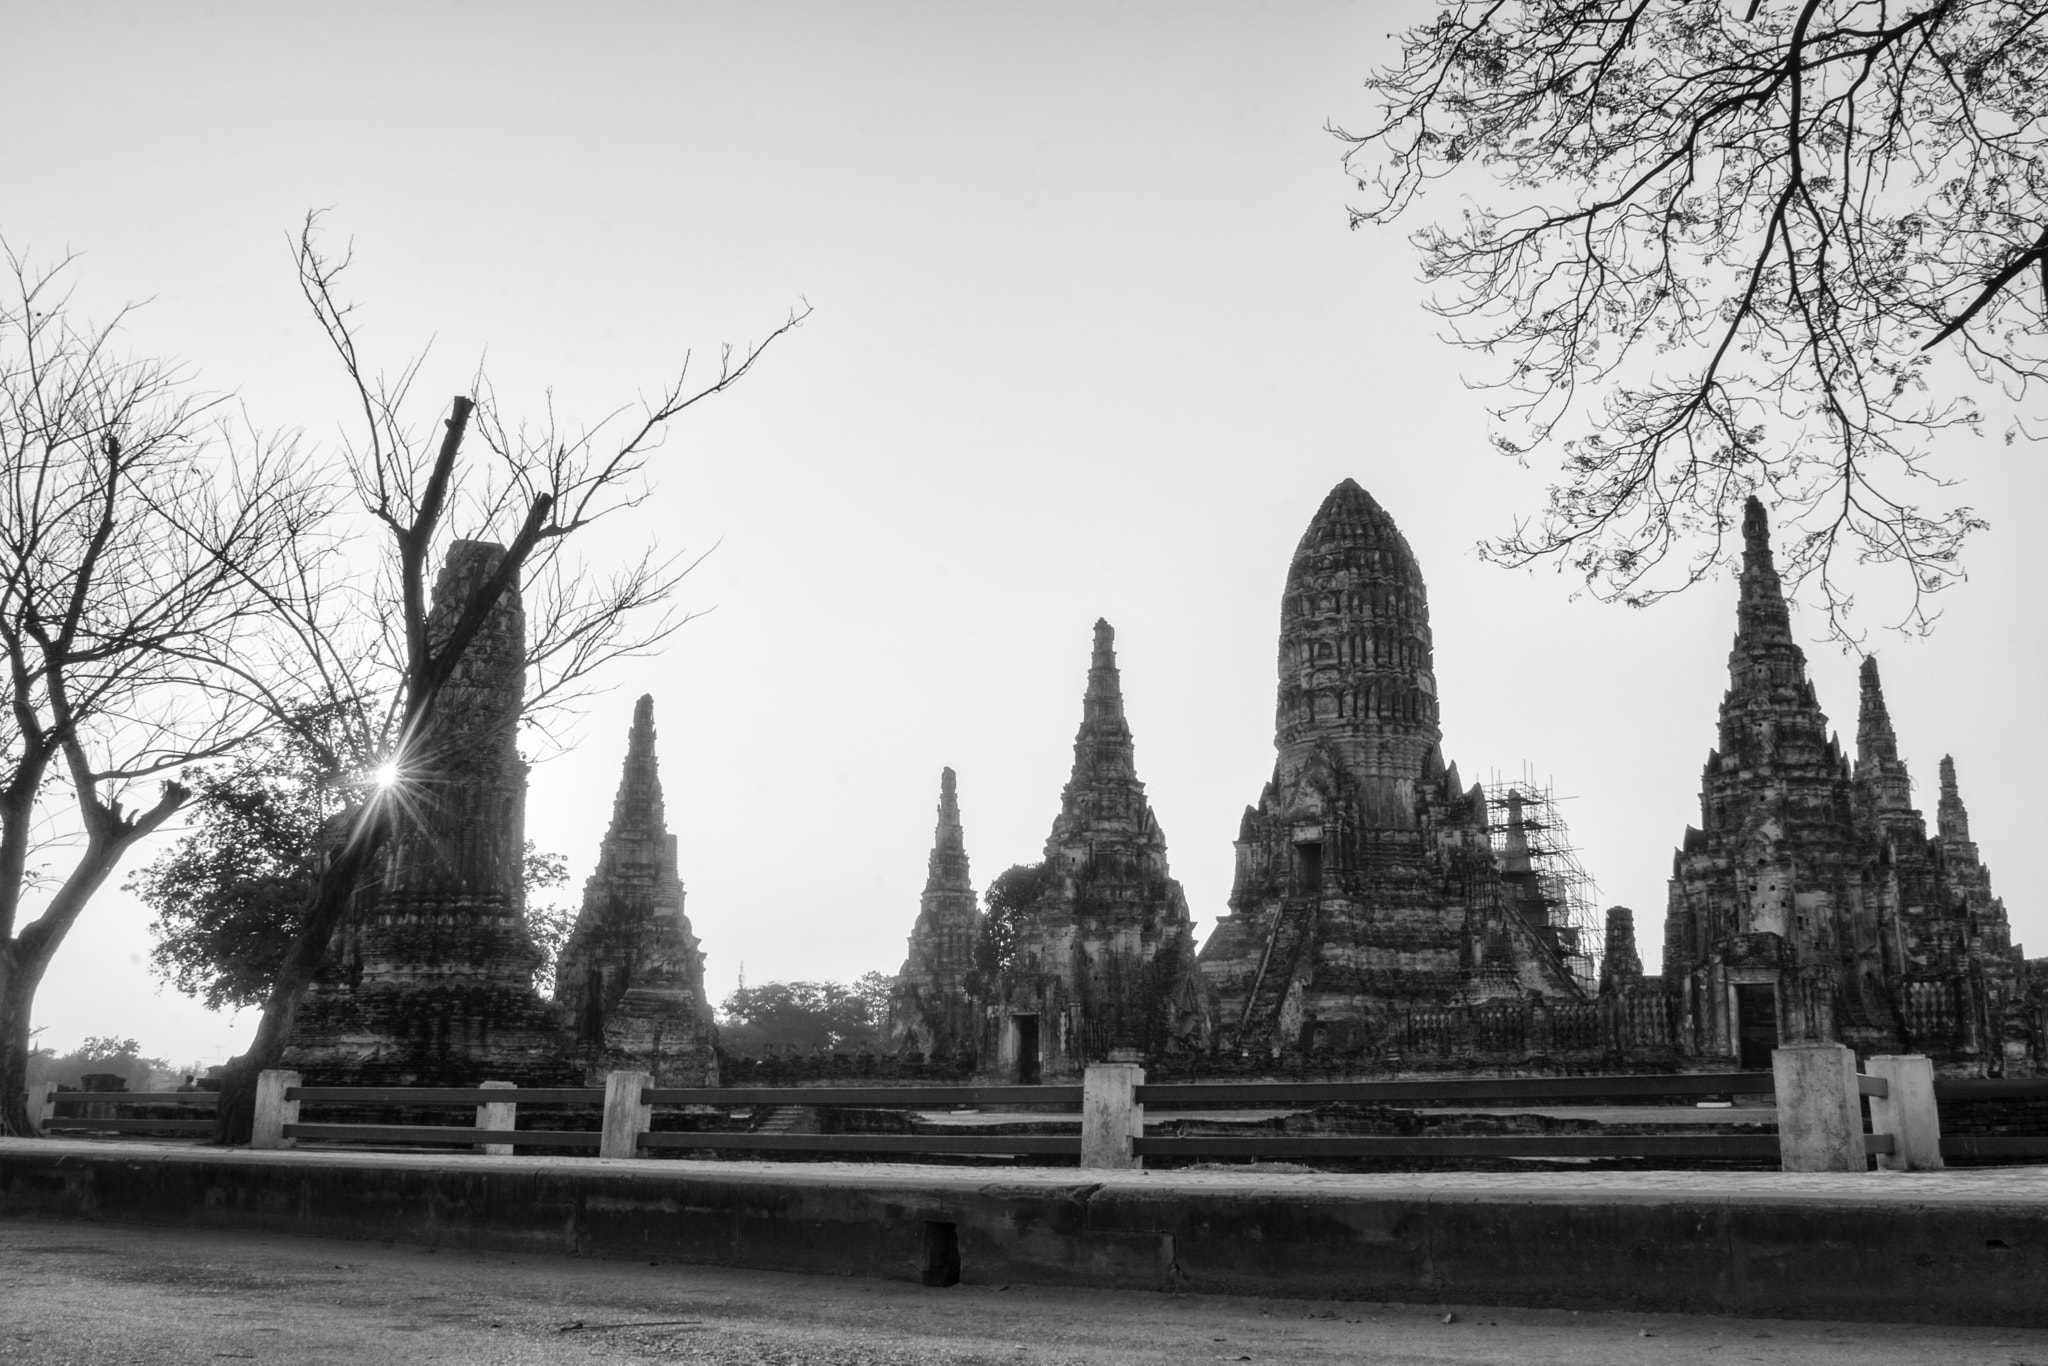 AF Nikkor 20mm f/2.8 sample photo. Black&white temple photography